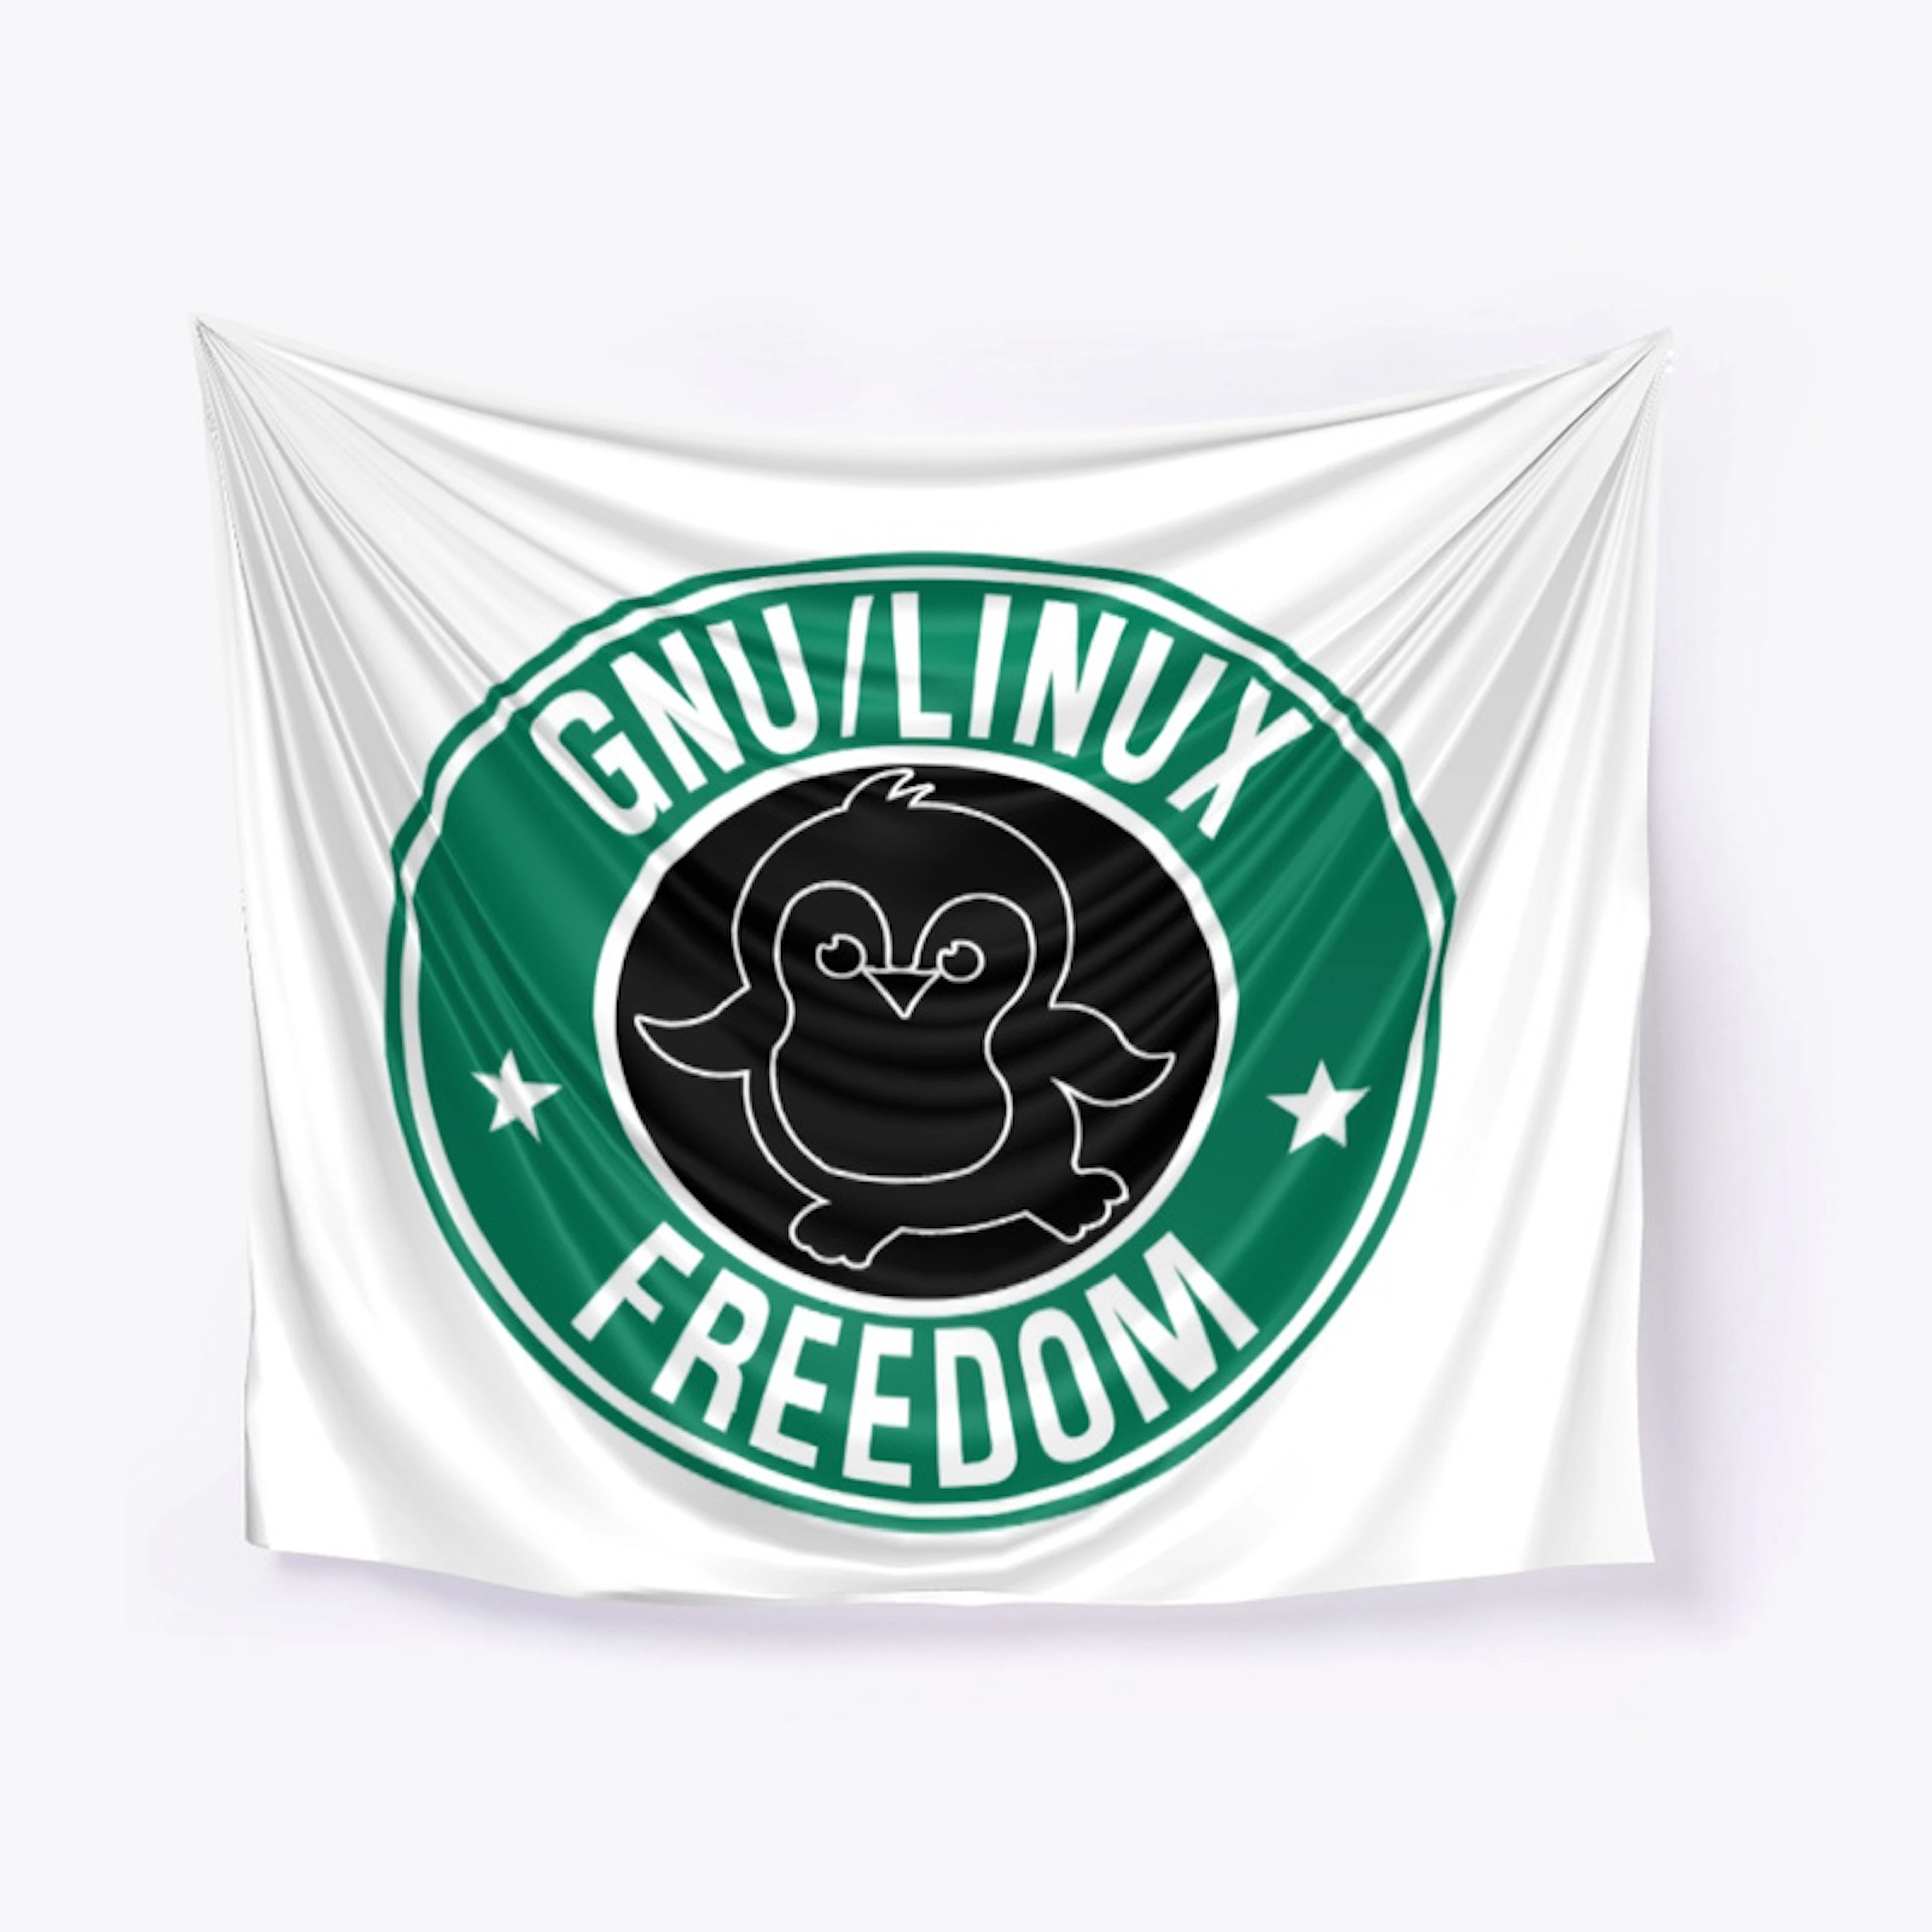 GNU/Linux Freedom  T-Shirt